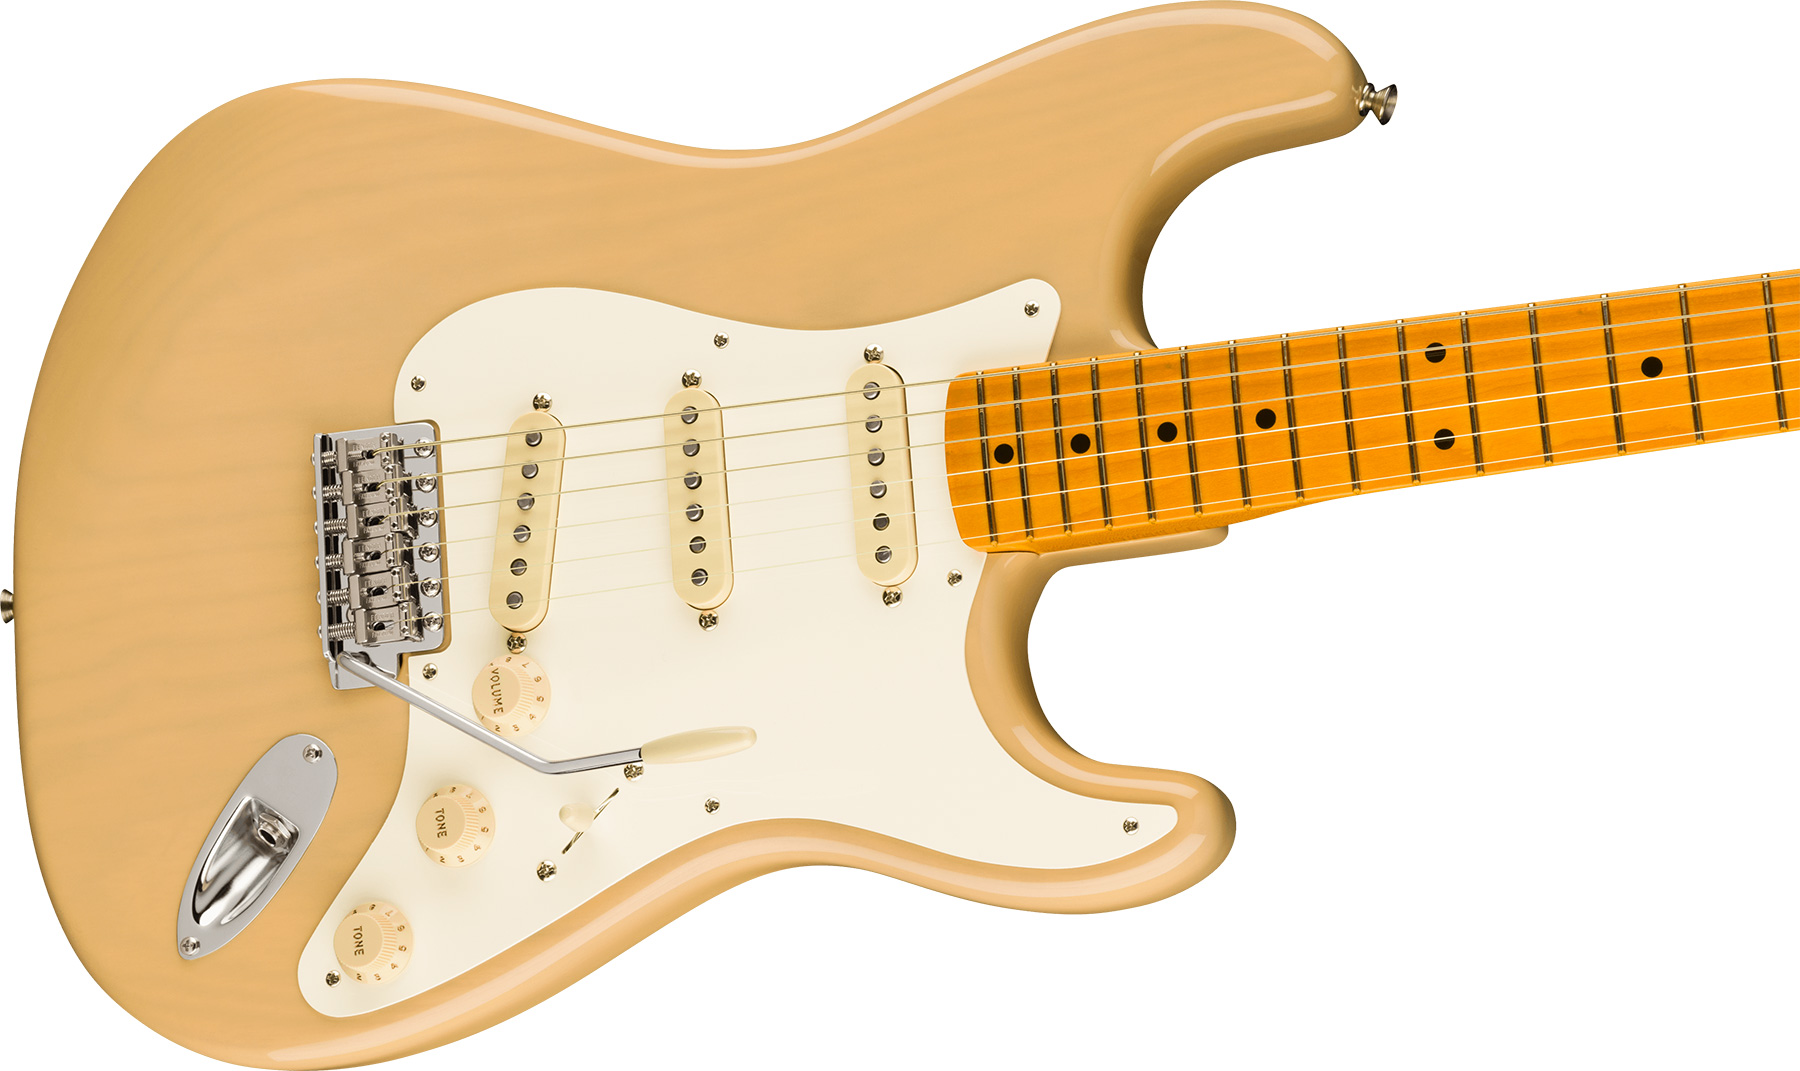 Fender Strat 1957 American Vintage Ii Usa 3s Trem Mn - Vintage Blonde - E-Gitarre in Str-Form - Variation 2